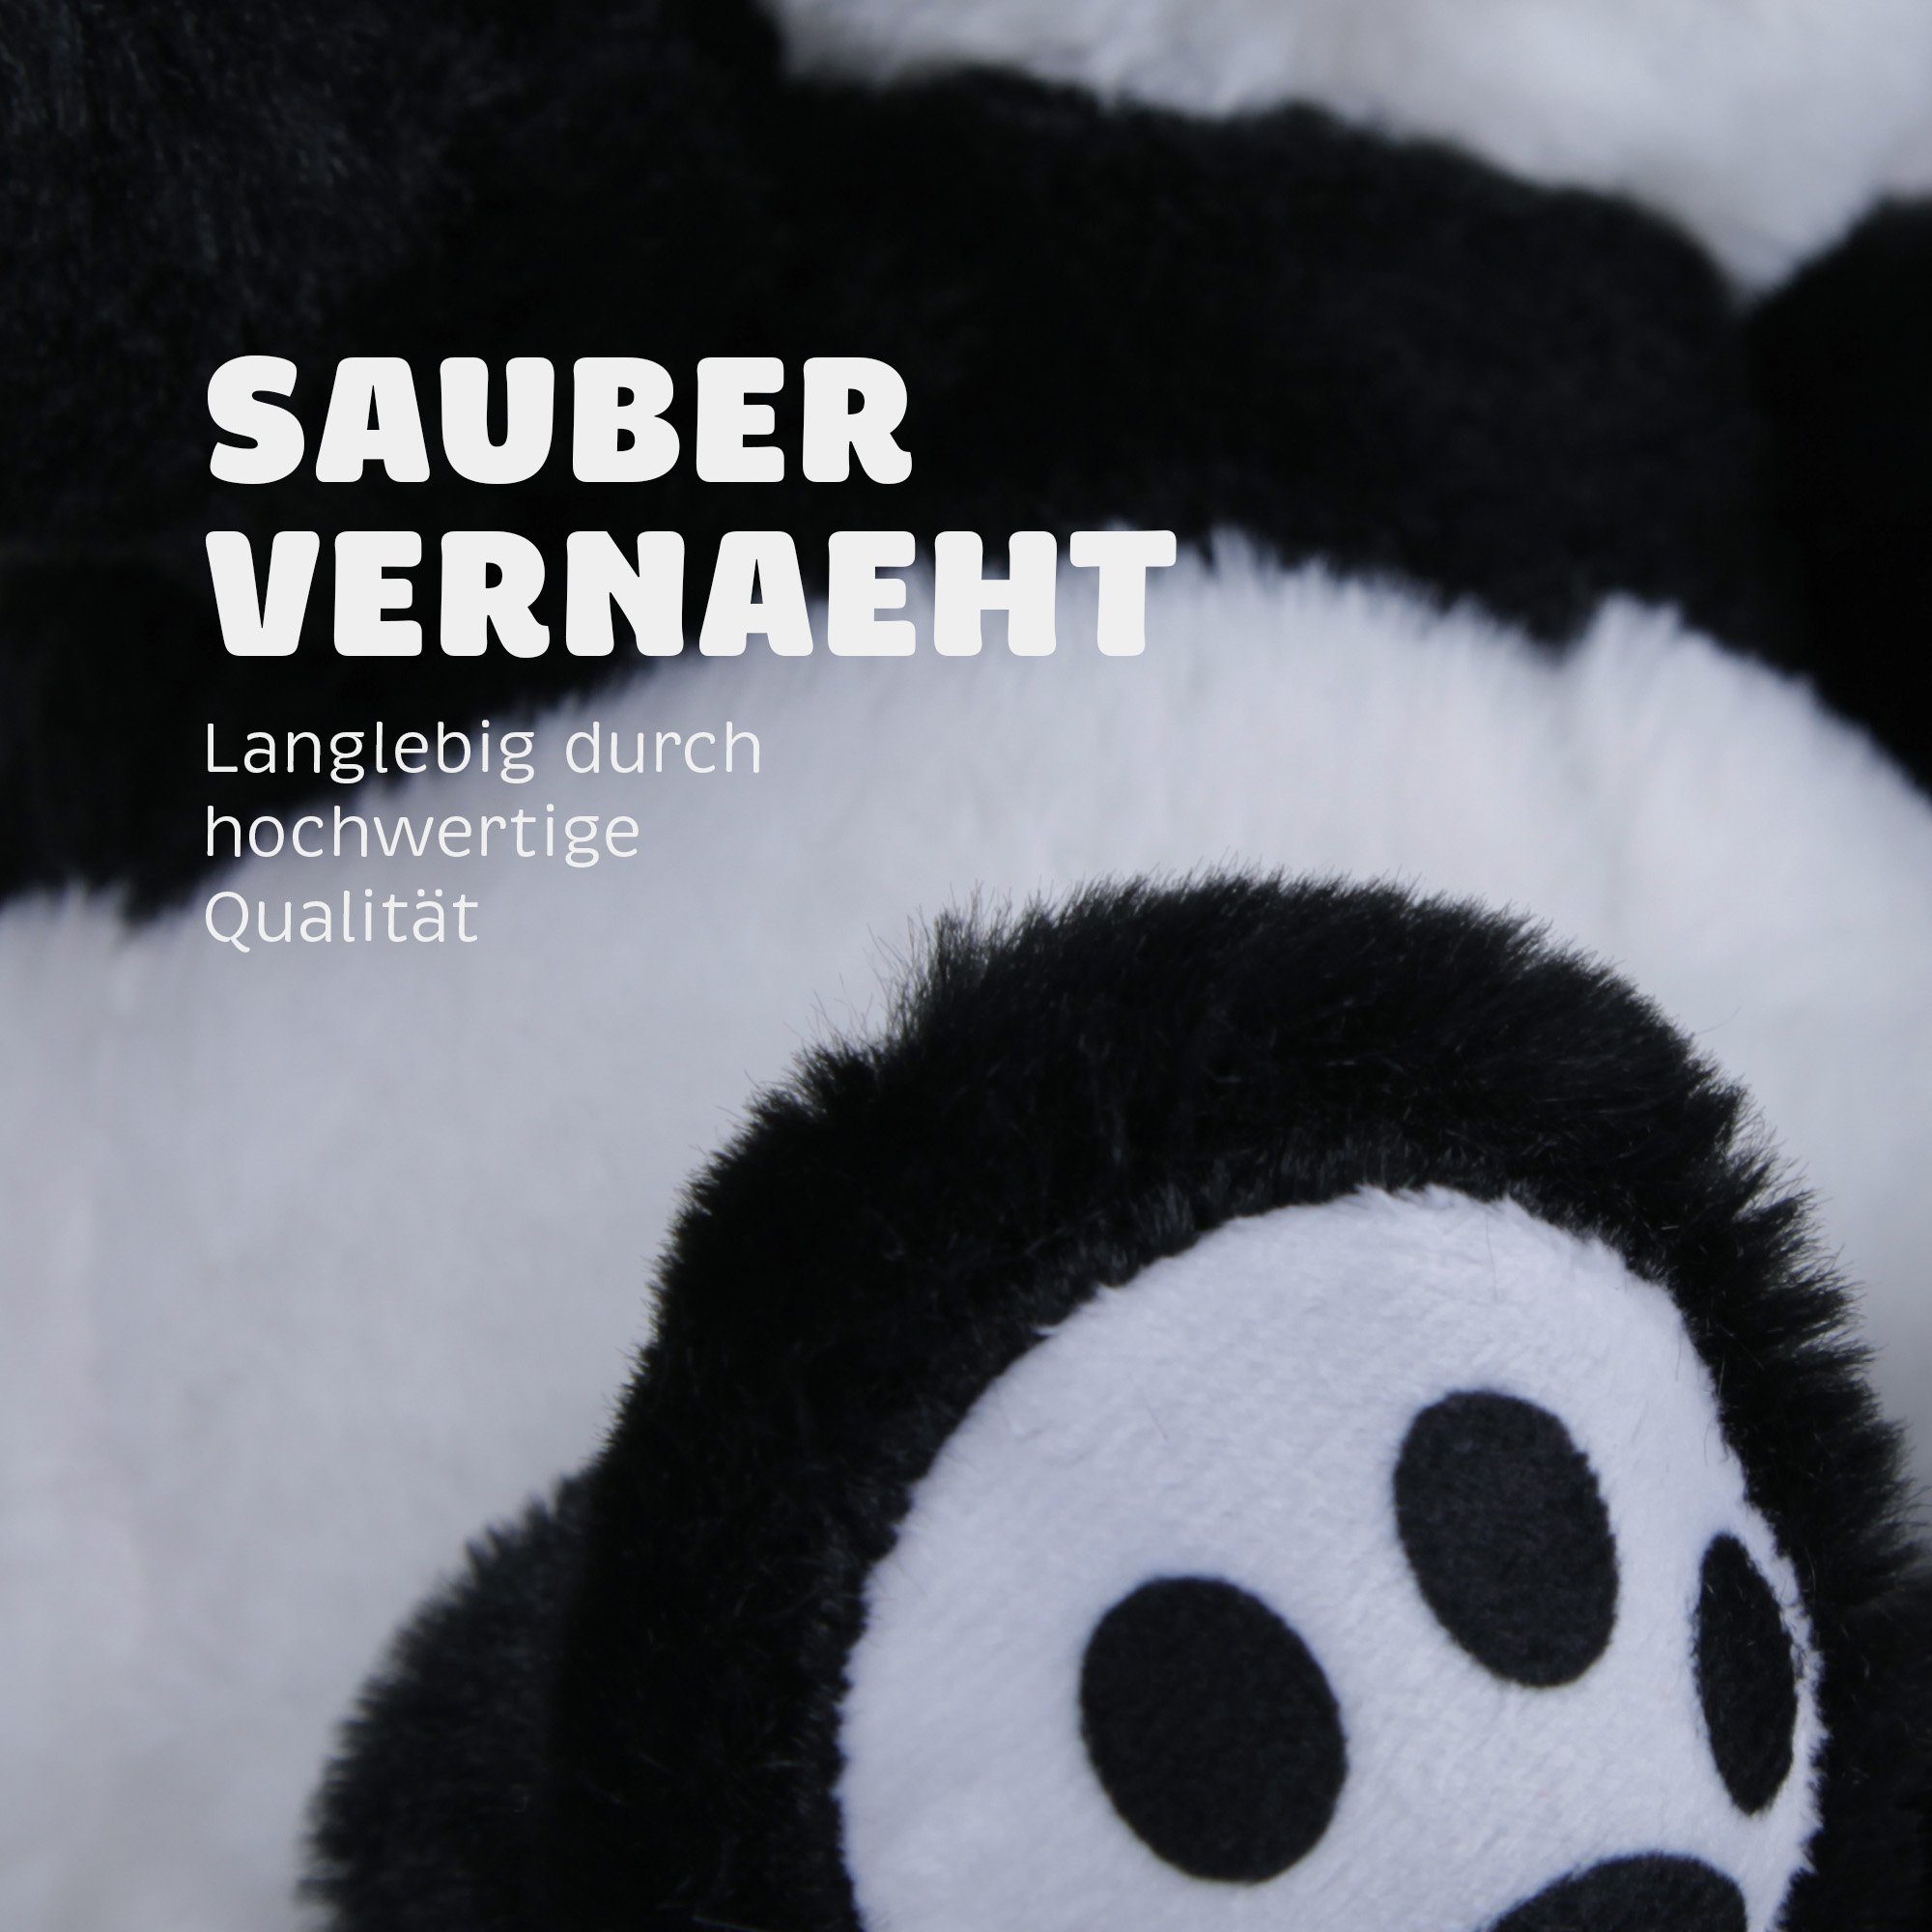 Bestlivings Kuscheltier Stofftier - Helden Nachhaltig Panda), (Pao Umweltfreundlich 100% - Material Plüschtier recyceltes